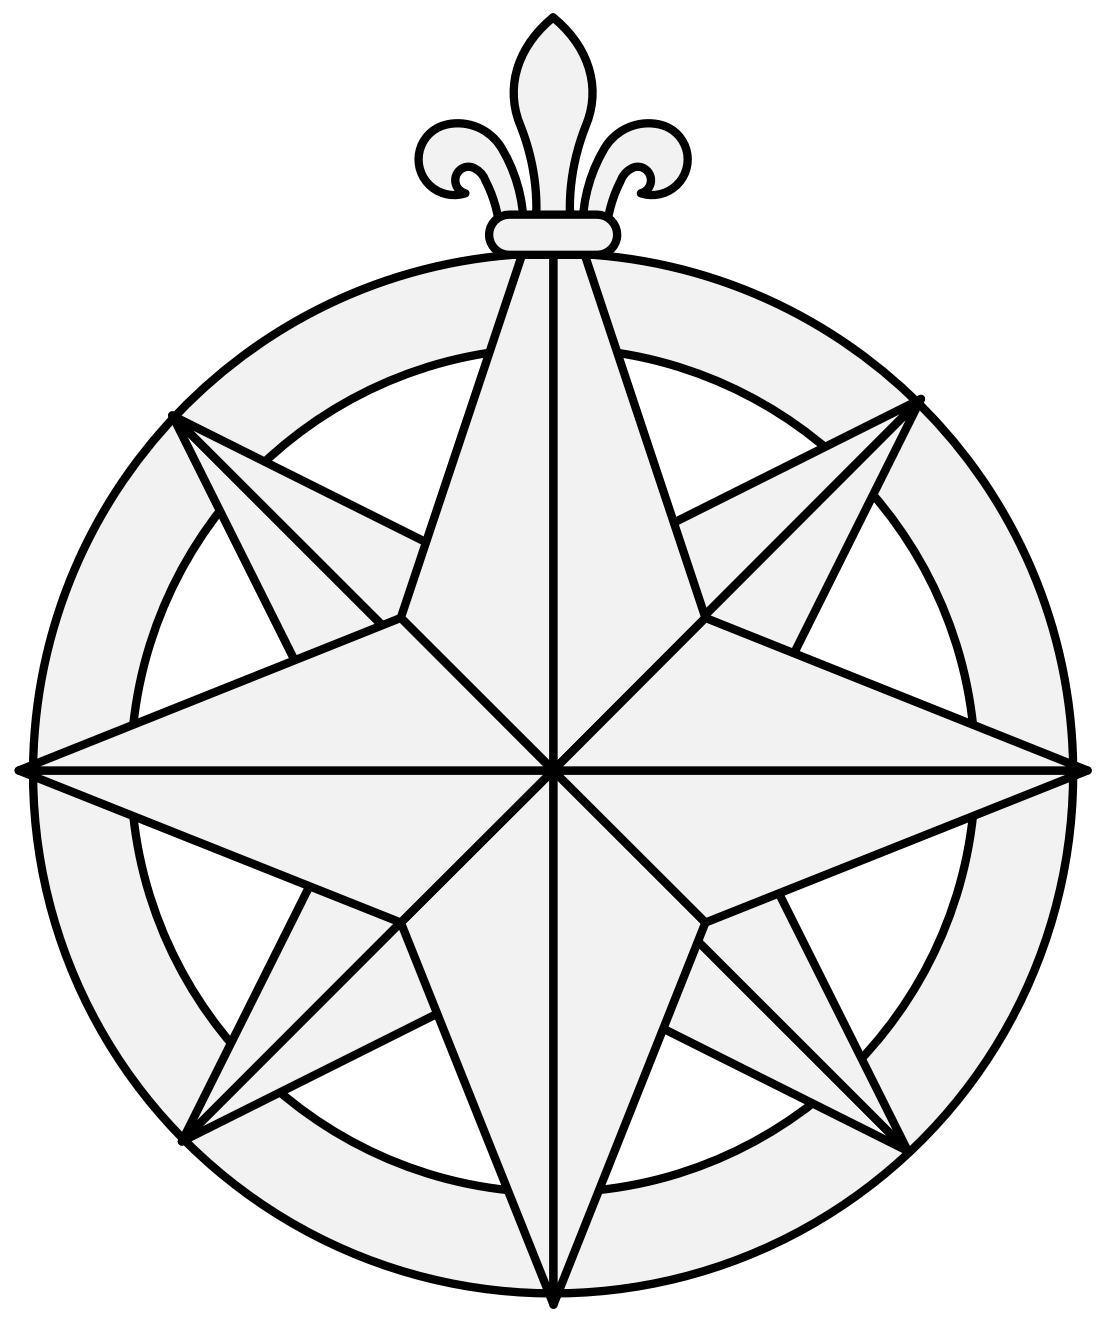 Compass Rose - Traceable Heraldic Art